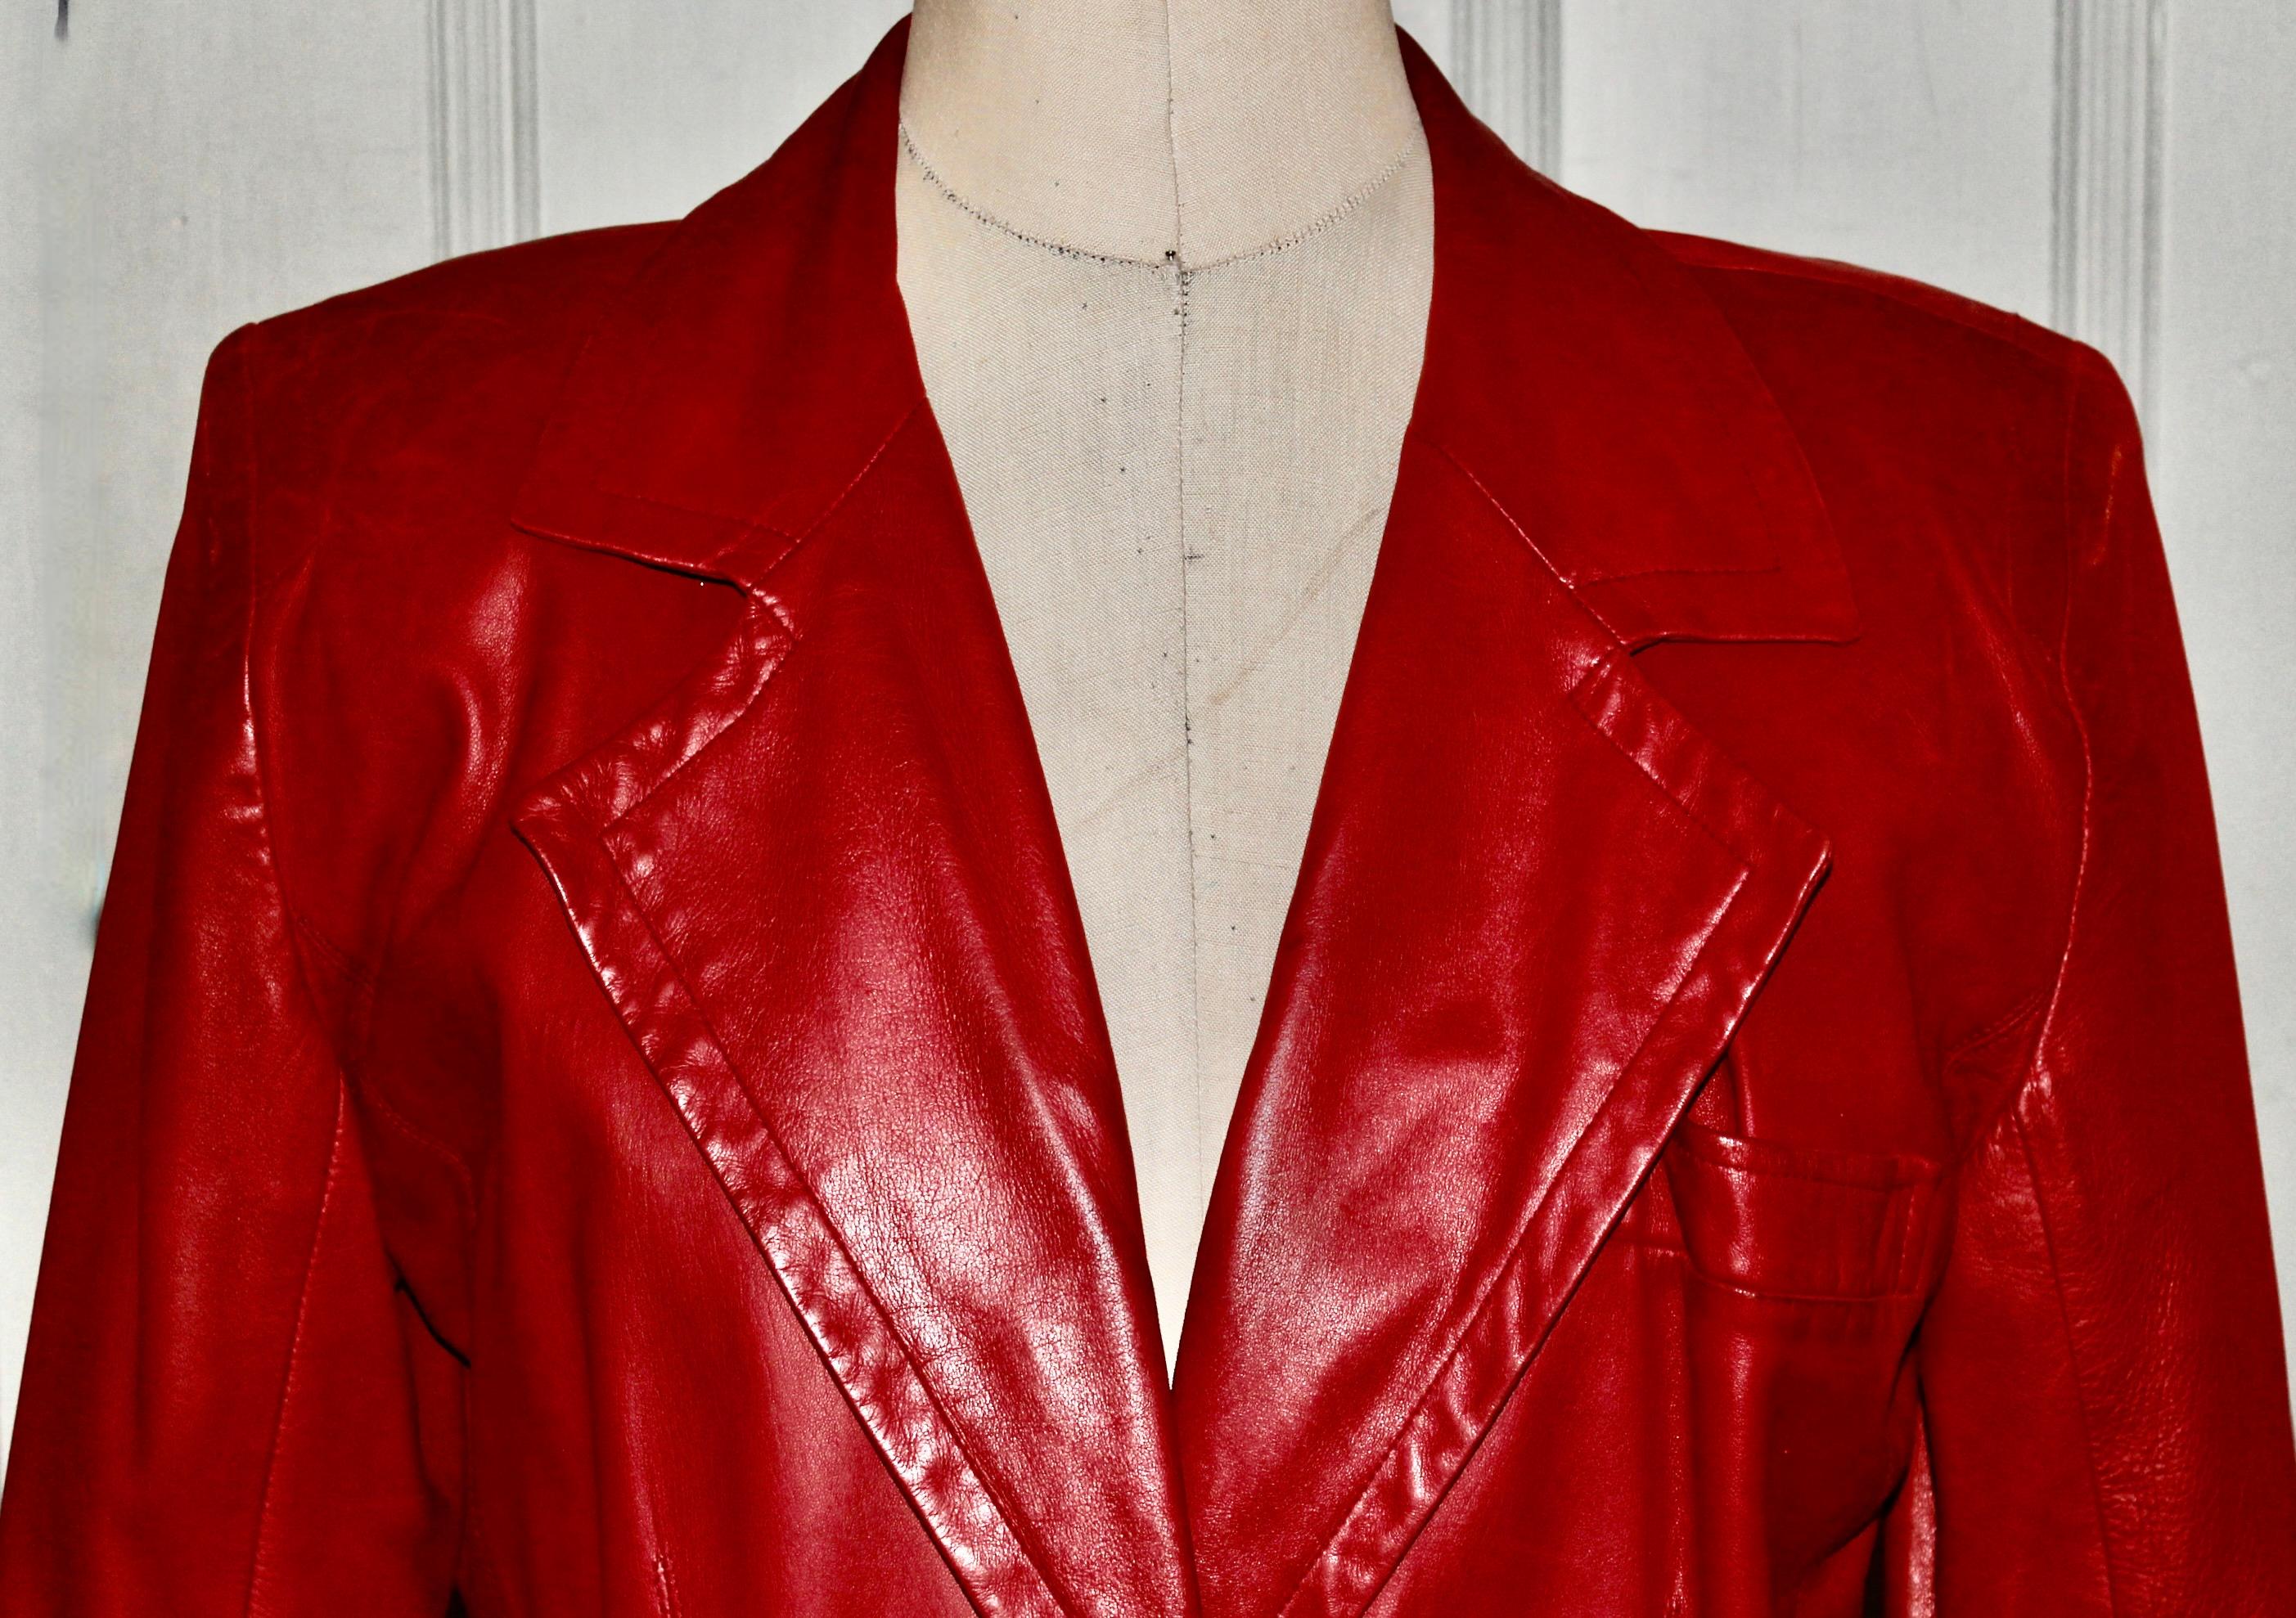 Biete einen schönen roten YSL-Lederanzug aus den 1970-80er Jahren an. Größe 42. Taille 28